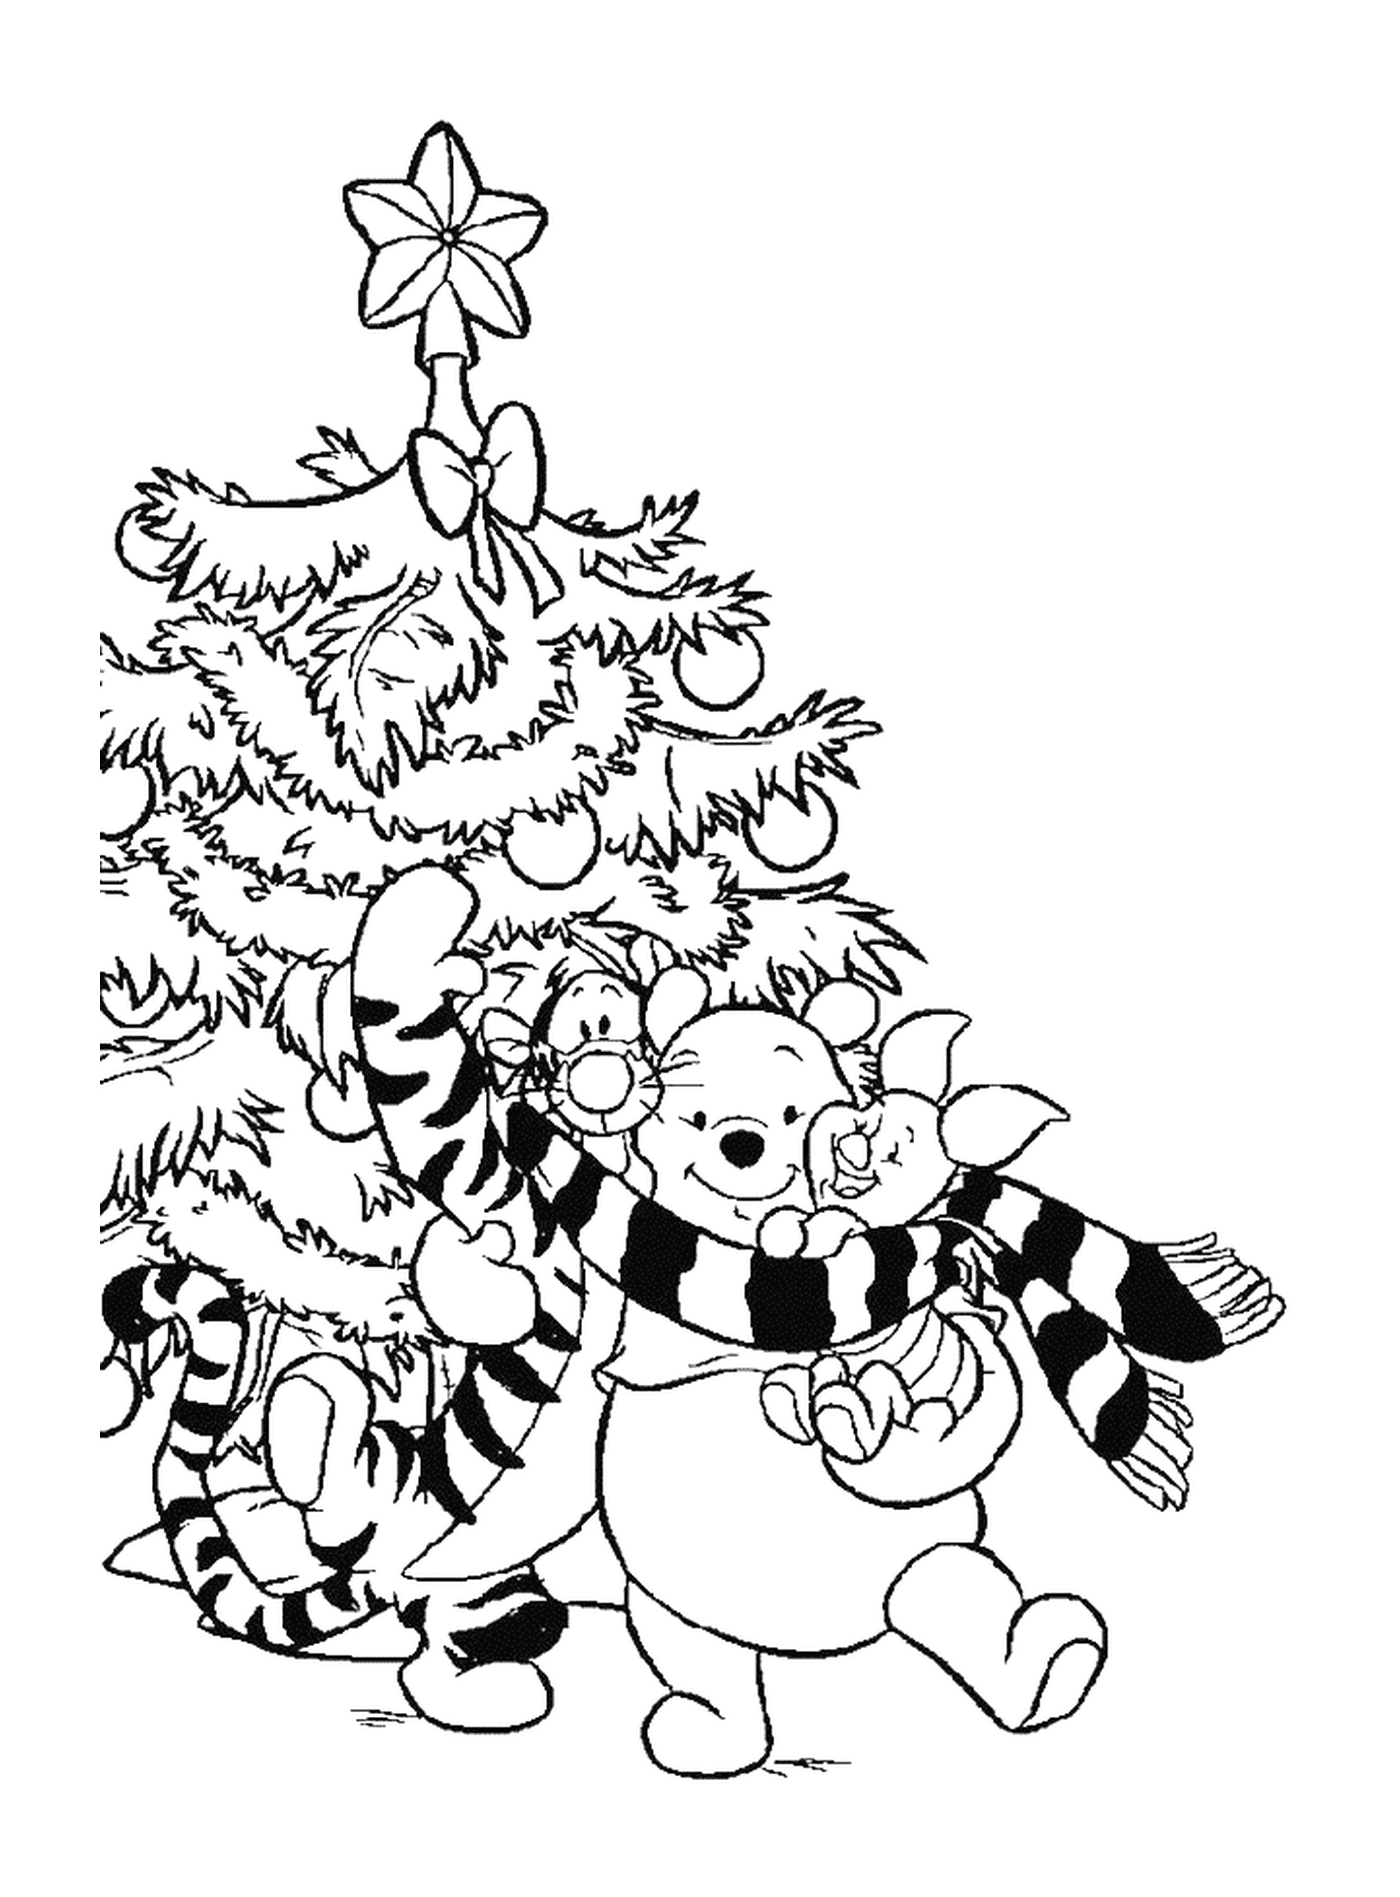  温妮 提格鲁和波西内 在圣诞树前面 